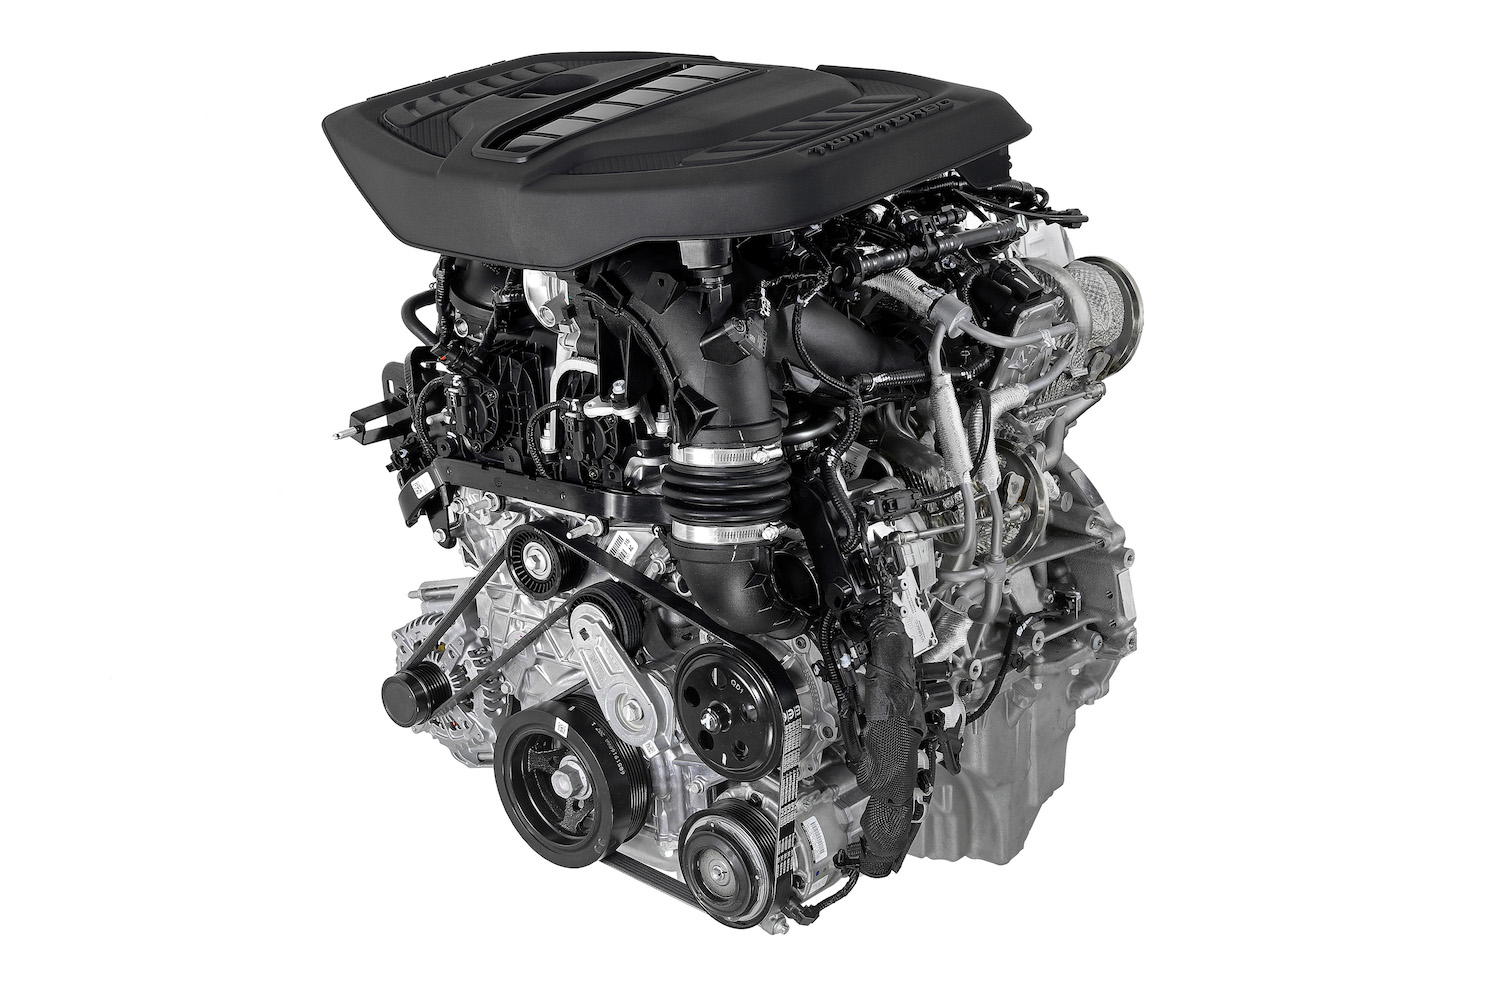 Promo photo of Dodge's new Hurricane I6 engine on a white background.